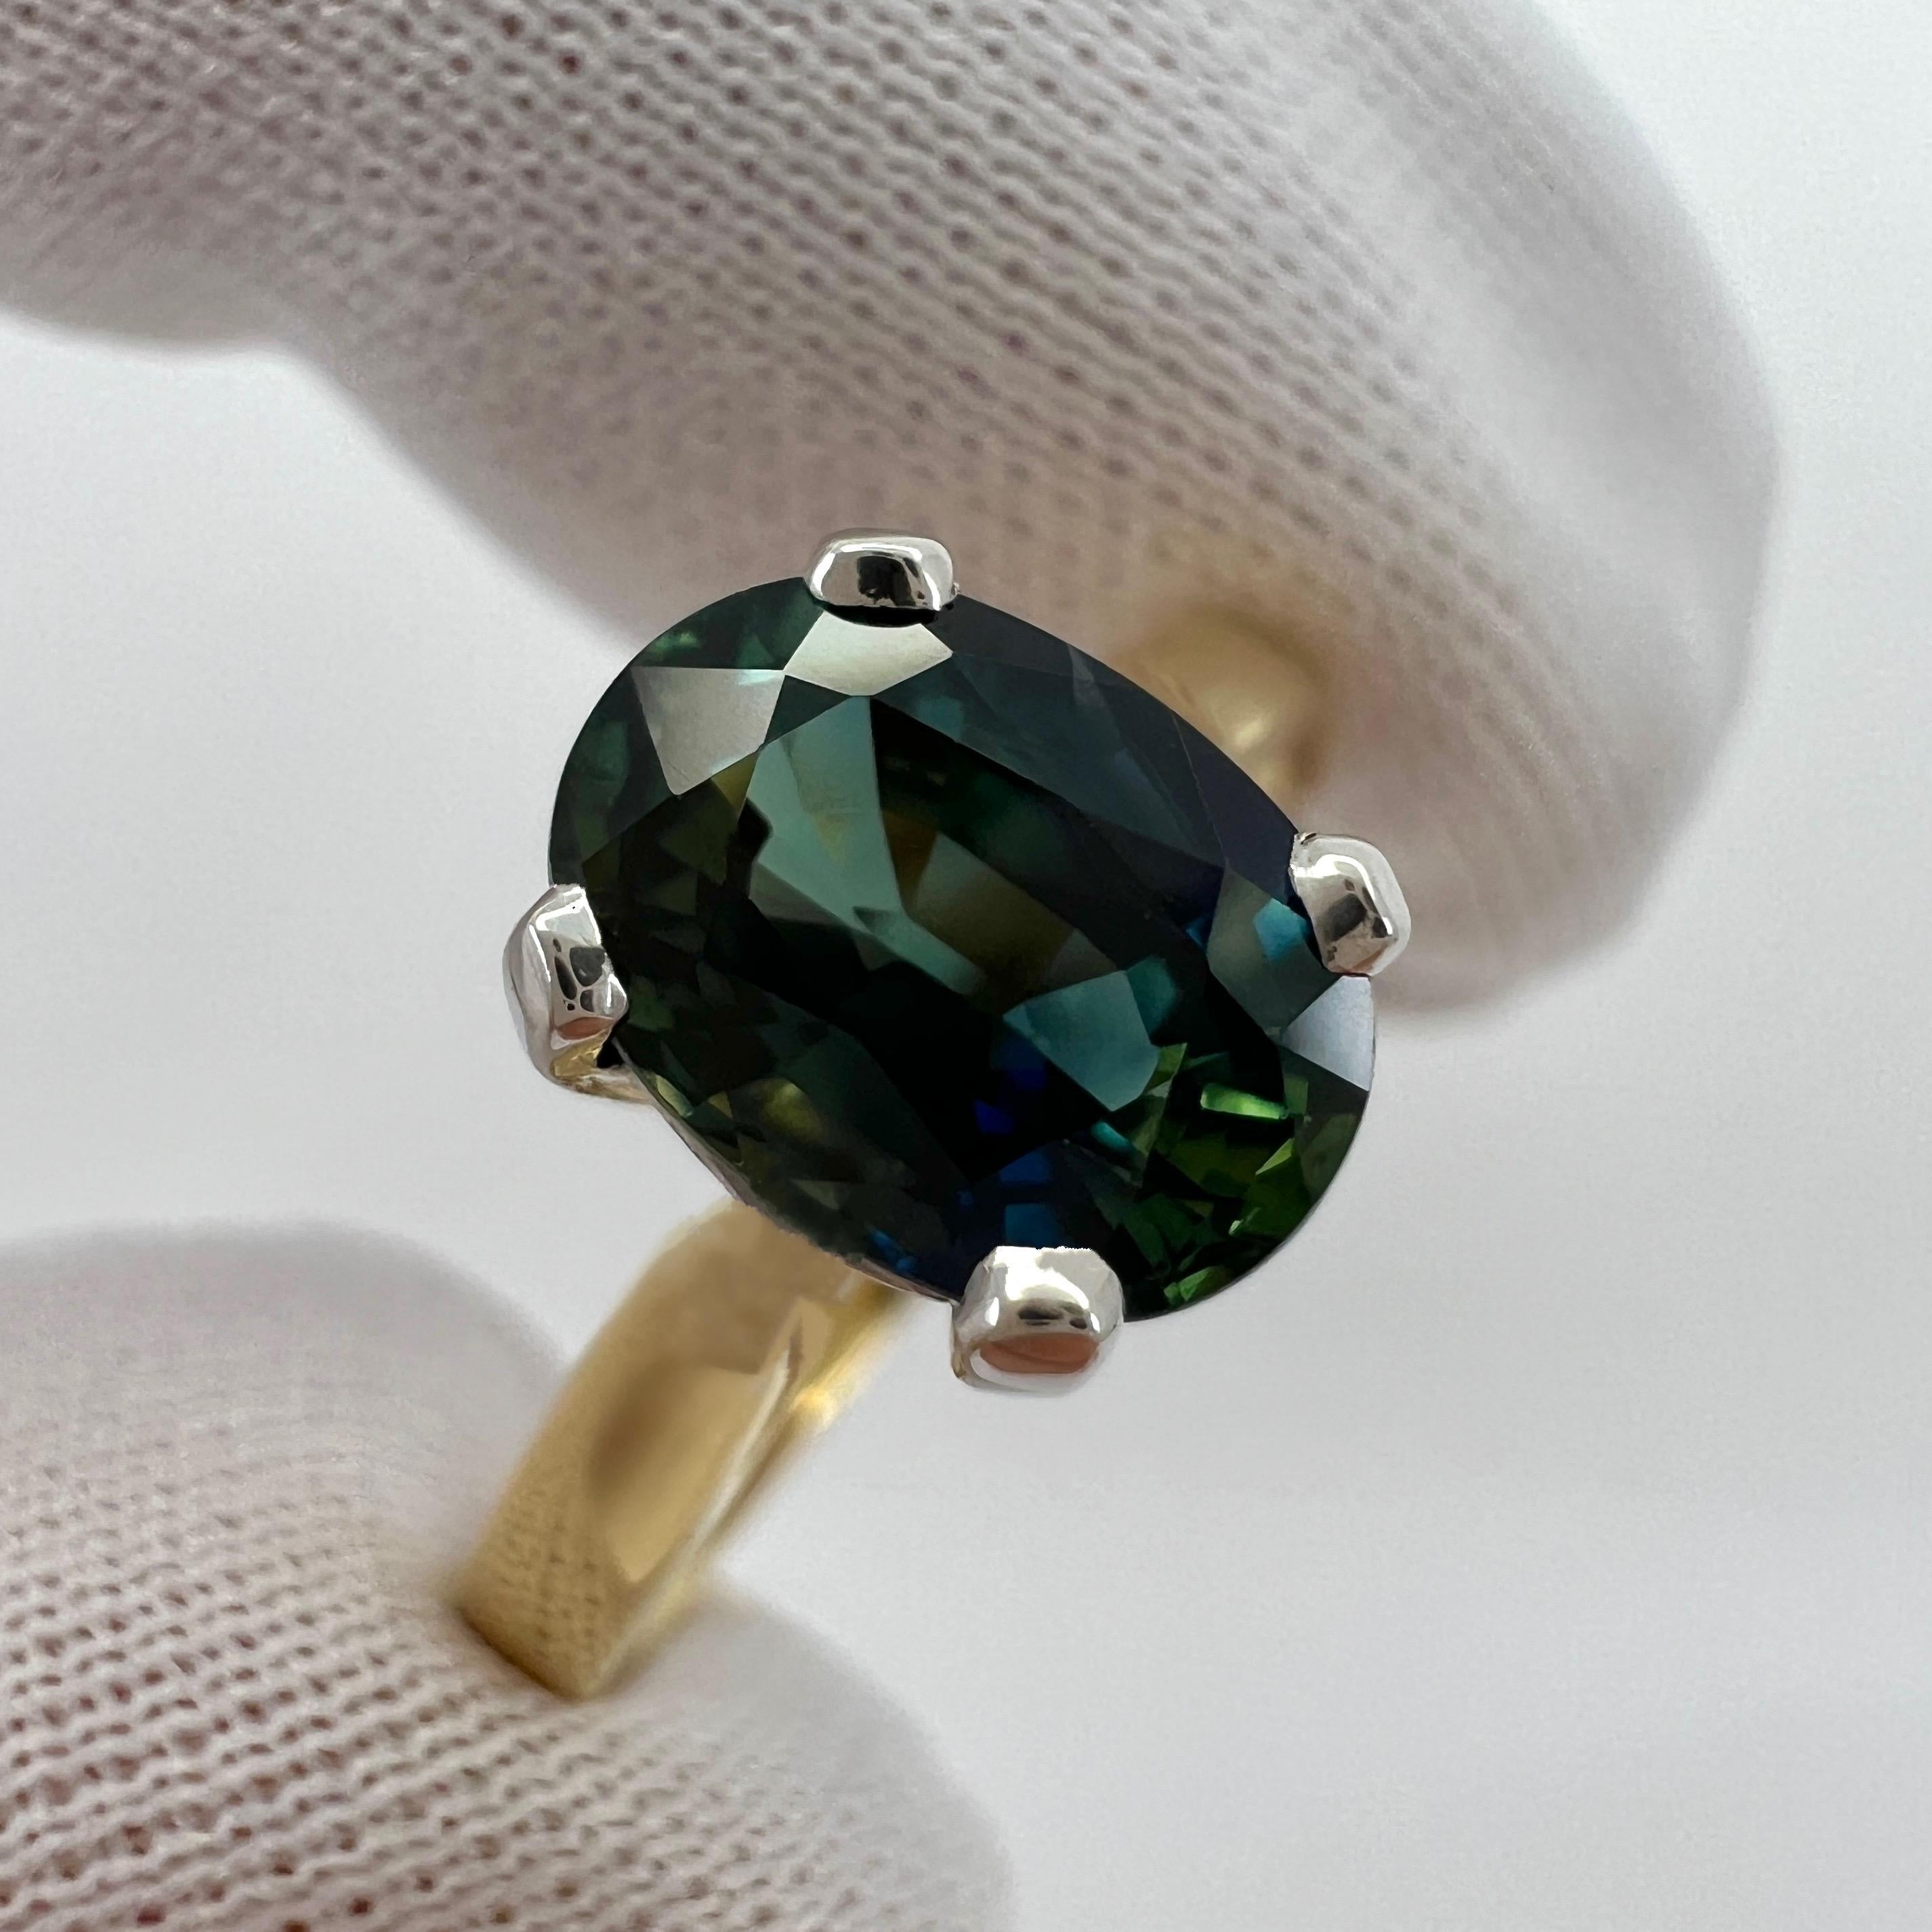 Einzigartiger natürlicher lebendiger blauer grüner zweifarbiger Saphir 18k gemischter Gold Solitär Ring.

1,46 Karat Stein mit einem atemberaubenden lebendigen blau-grünen zweifarbigen Effekt, sehr selten und atemberaubend zu sehen. Auch hat sehr